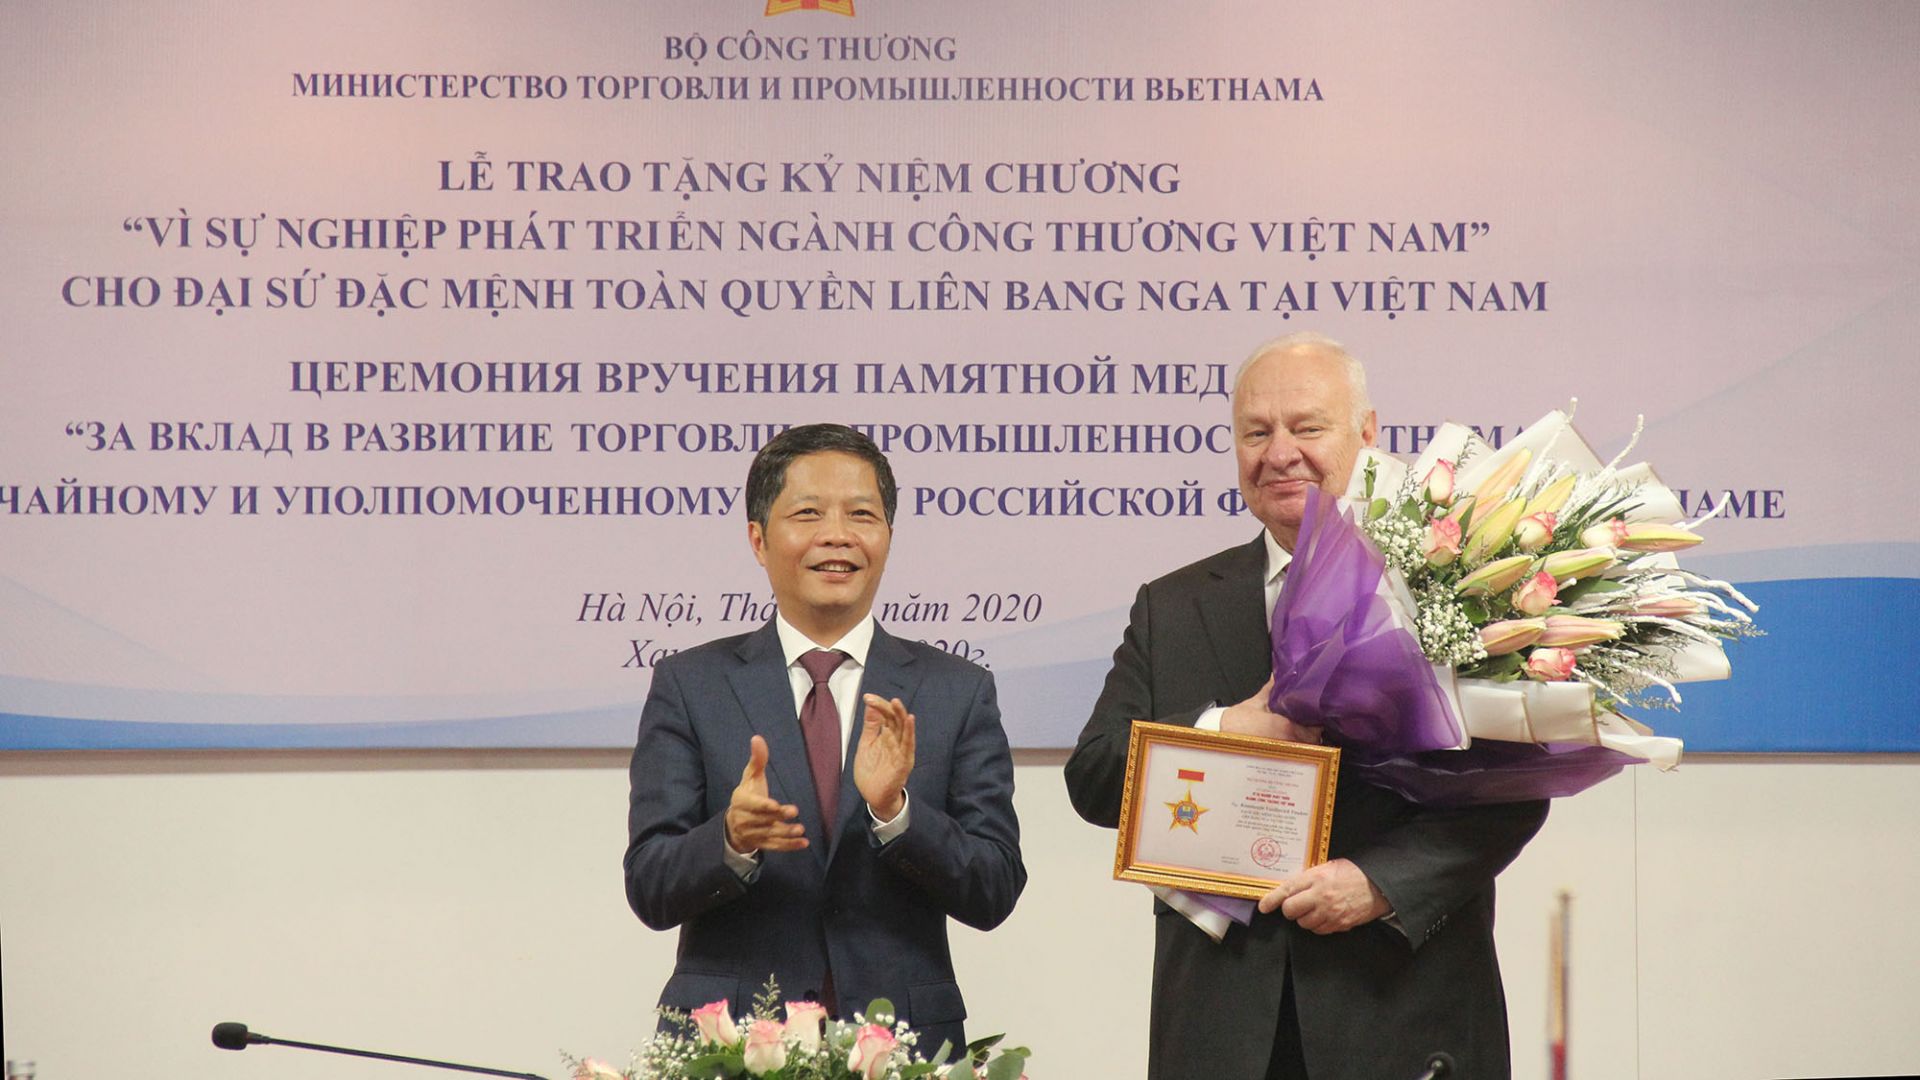 Đại sứ đặc mệnh toàn quyền Liên bang Nga tại Việt Nam